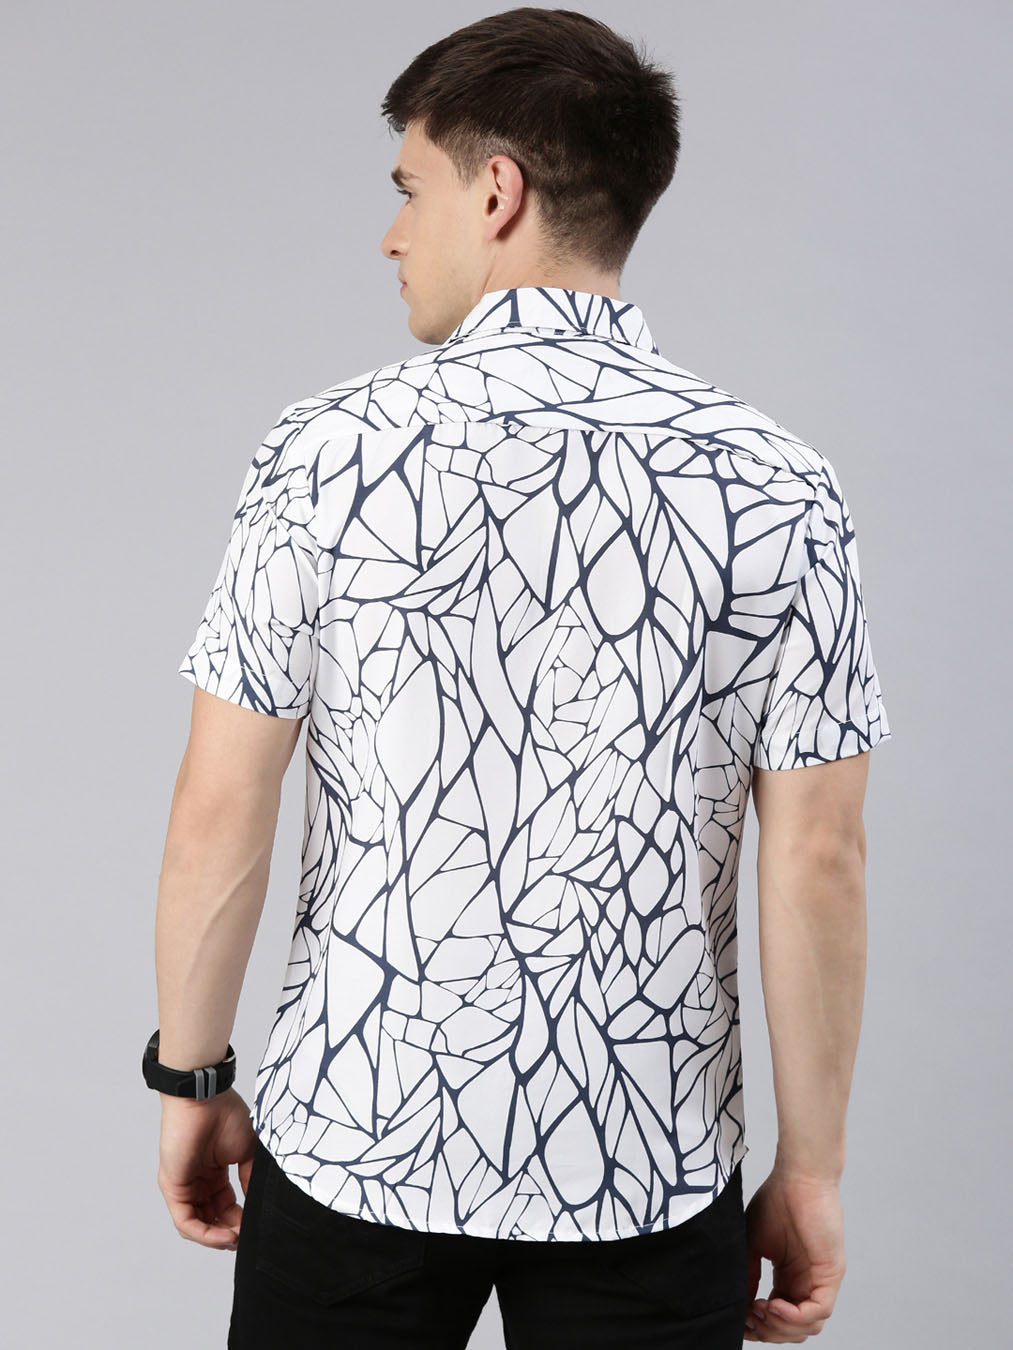 Abstract Loop White Shirt Printed Shirt Bushirt   